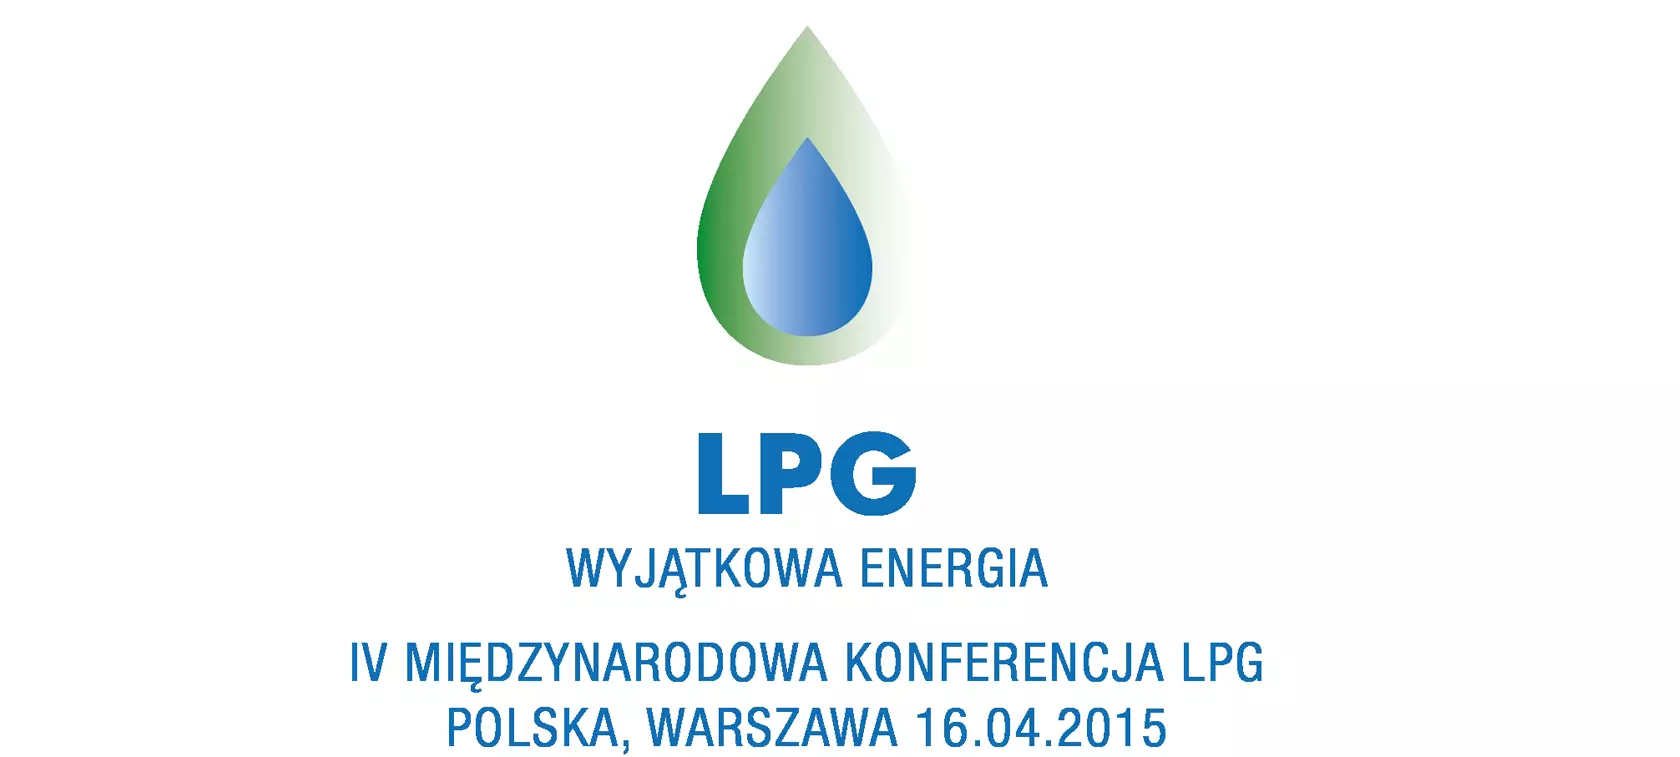 LPG - Wyjątkowa Energia po raz czwarty